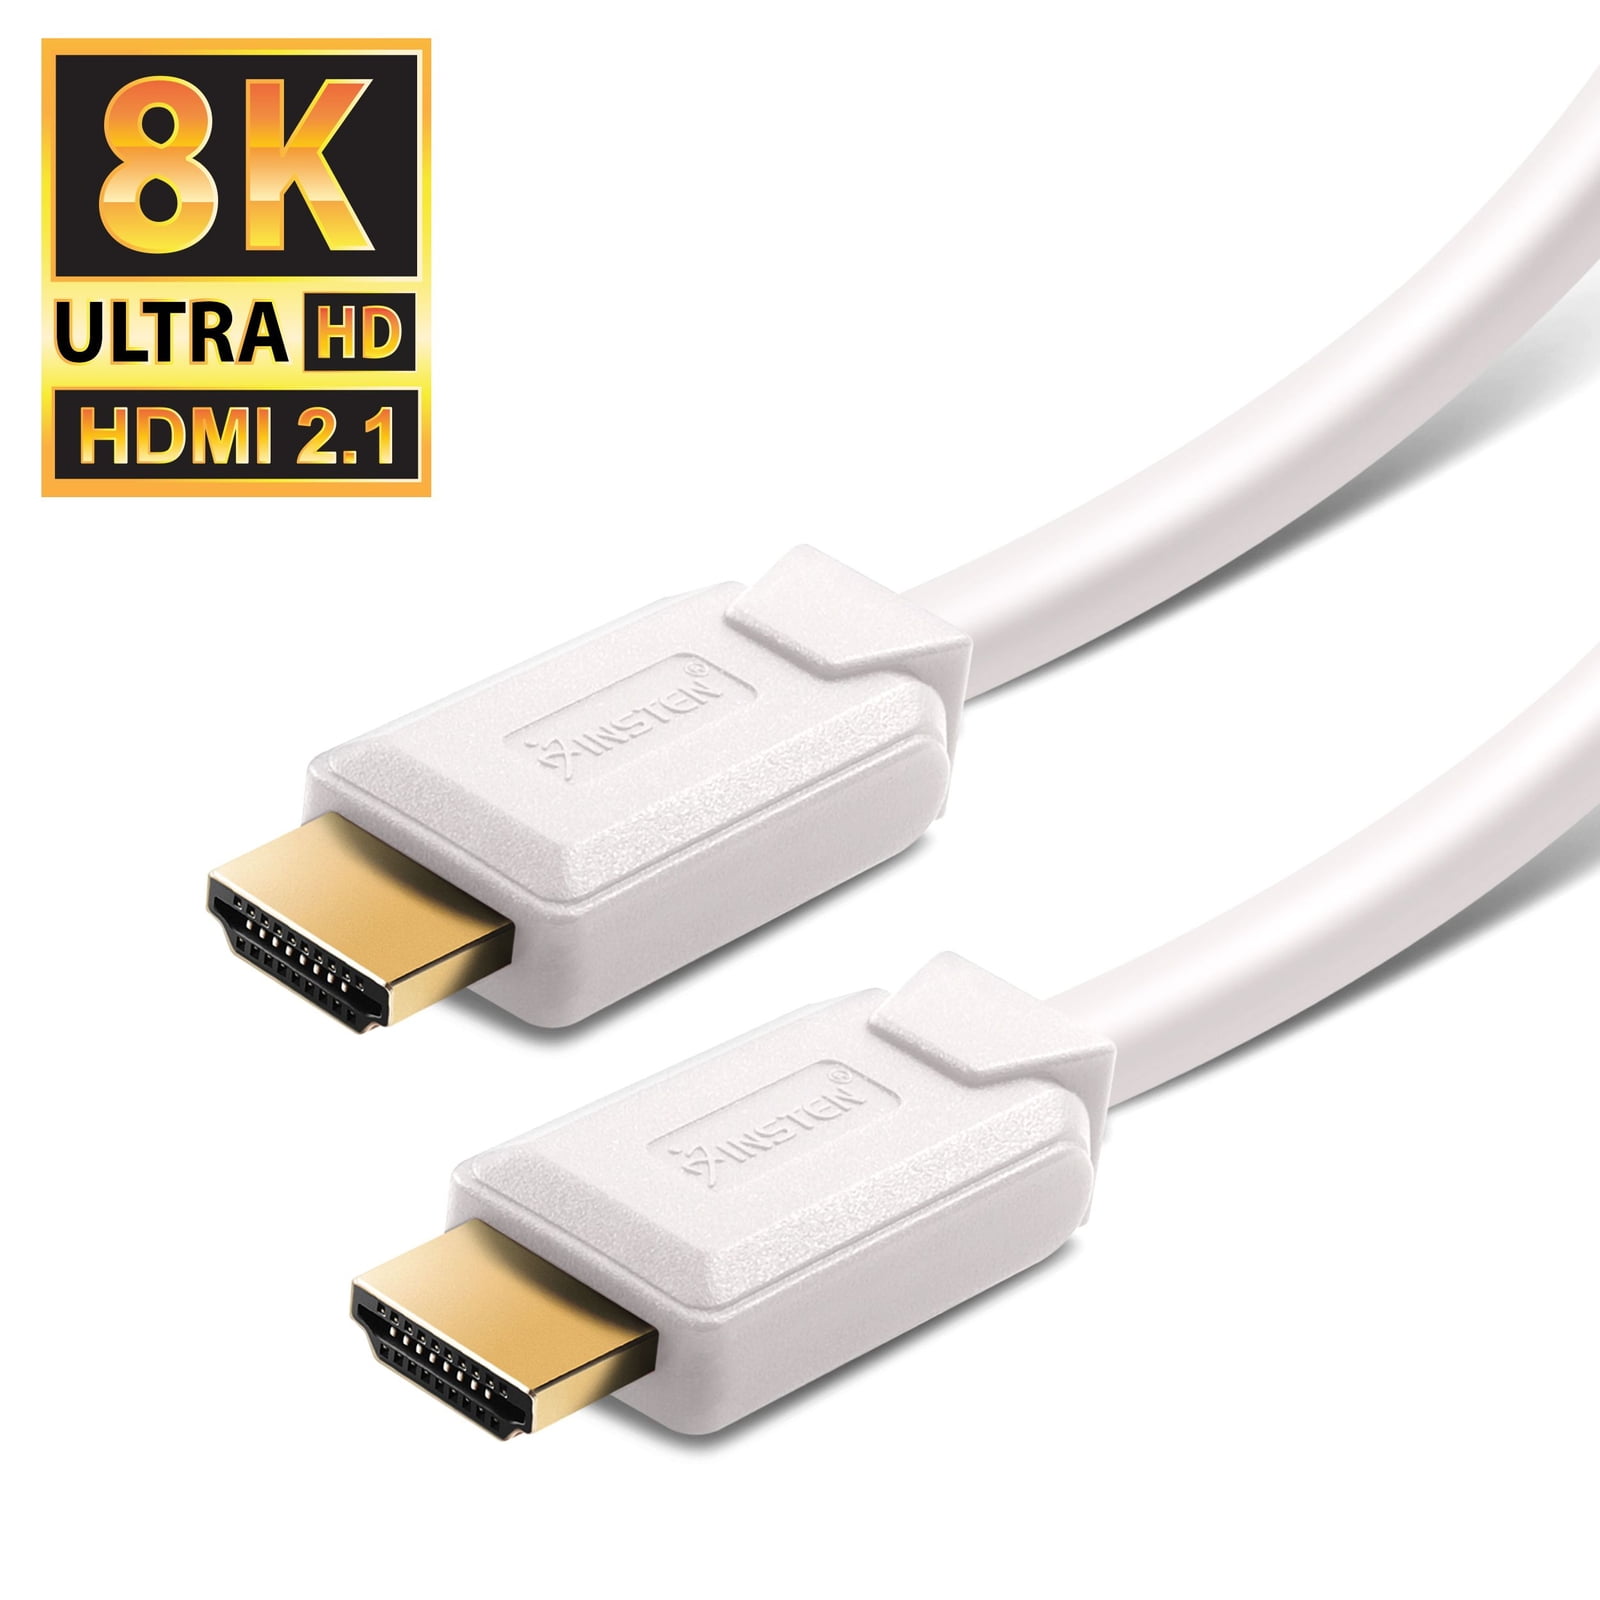 VCE Rallonge HDMI Male Femelle Câble d'Extension HDMI pour TV Stick 4K HDMI  2.0 14cm Lot de 2